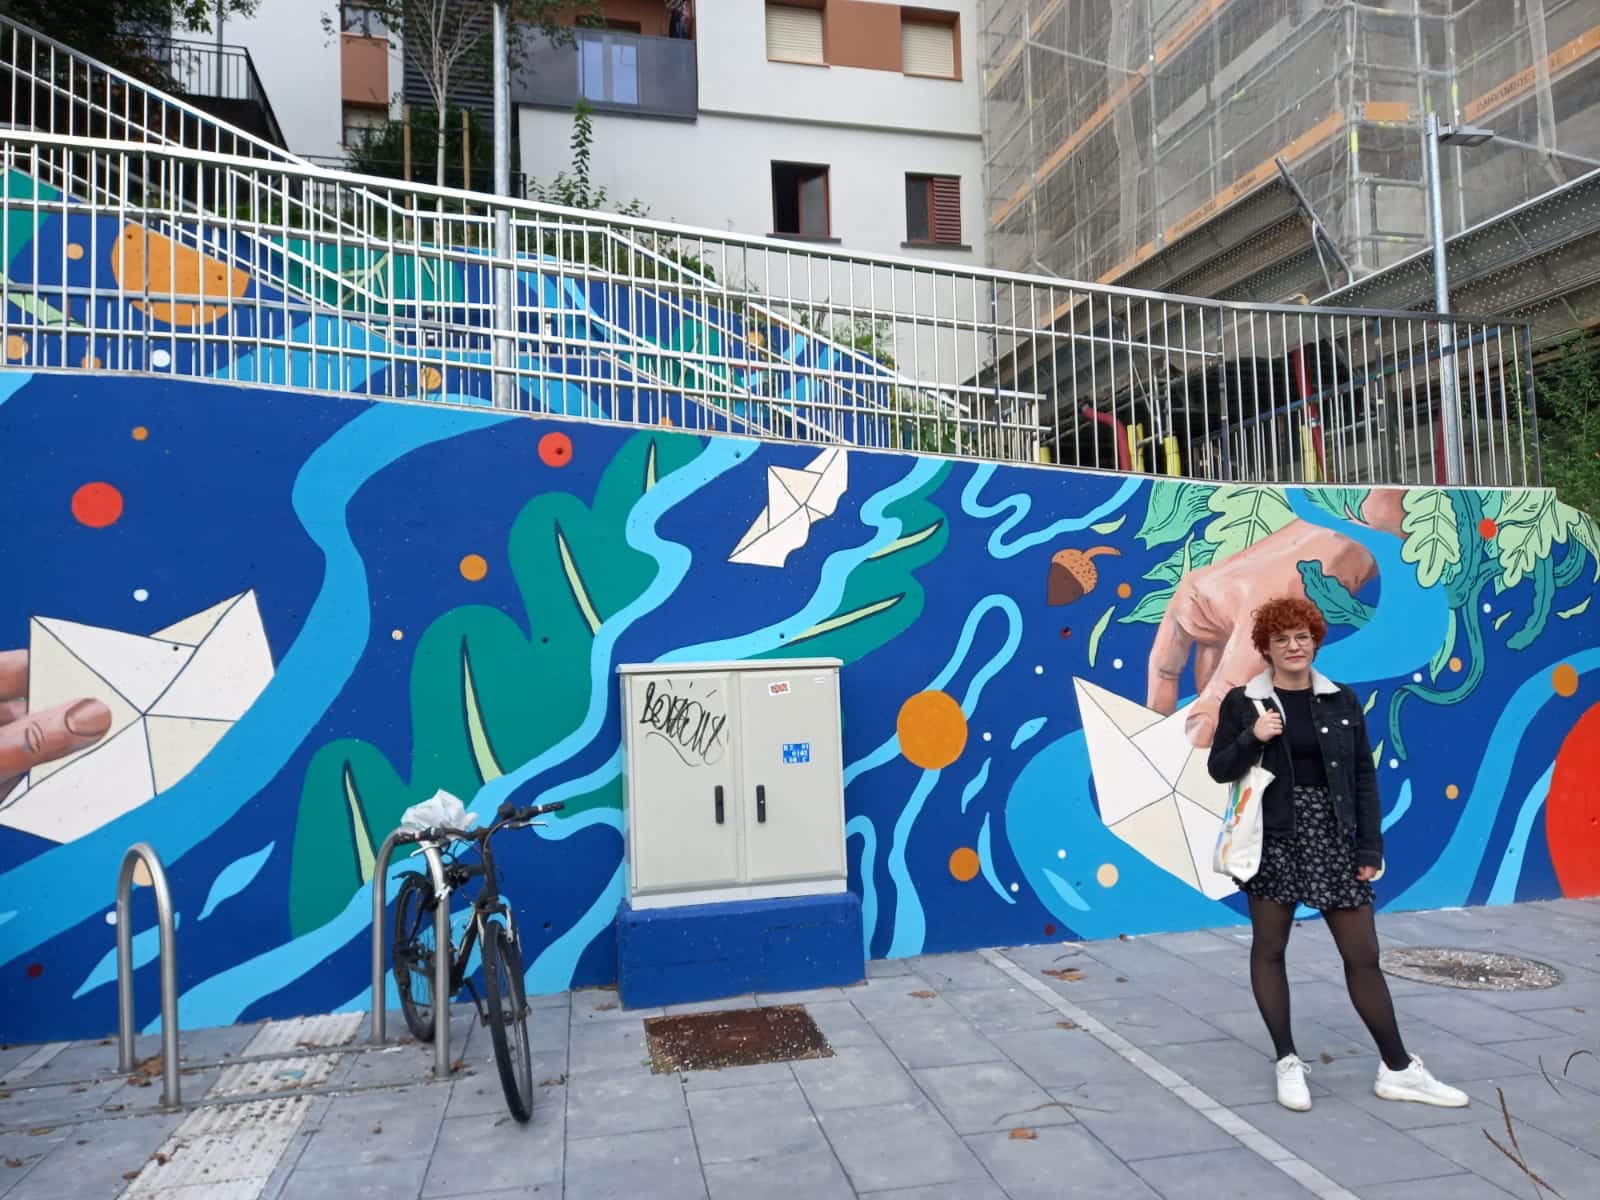 indice - (Fotos) Donostia Apain embellece las fachadas a lo largo del Urumea